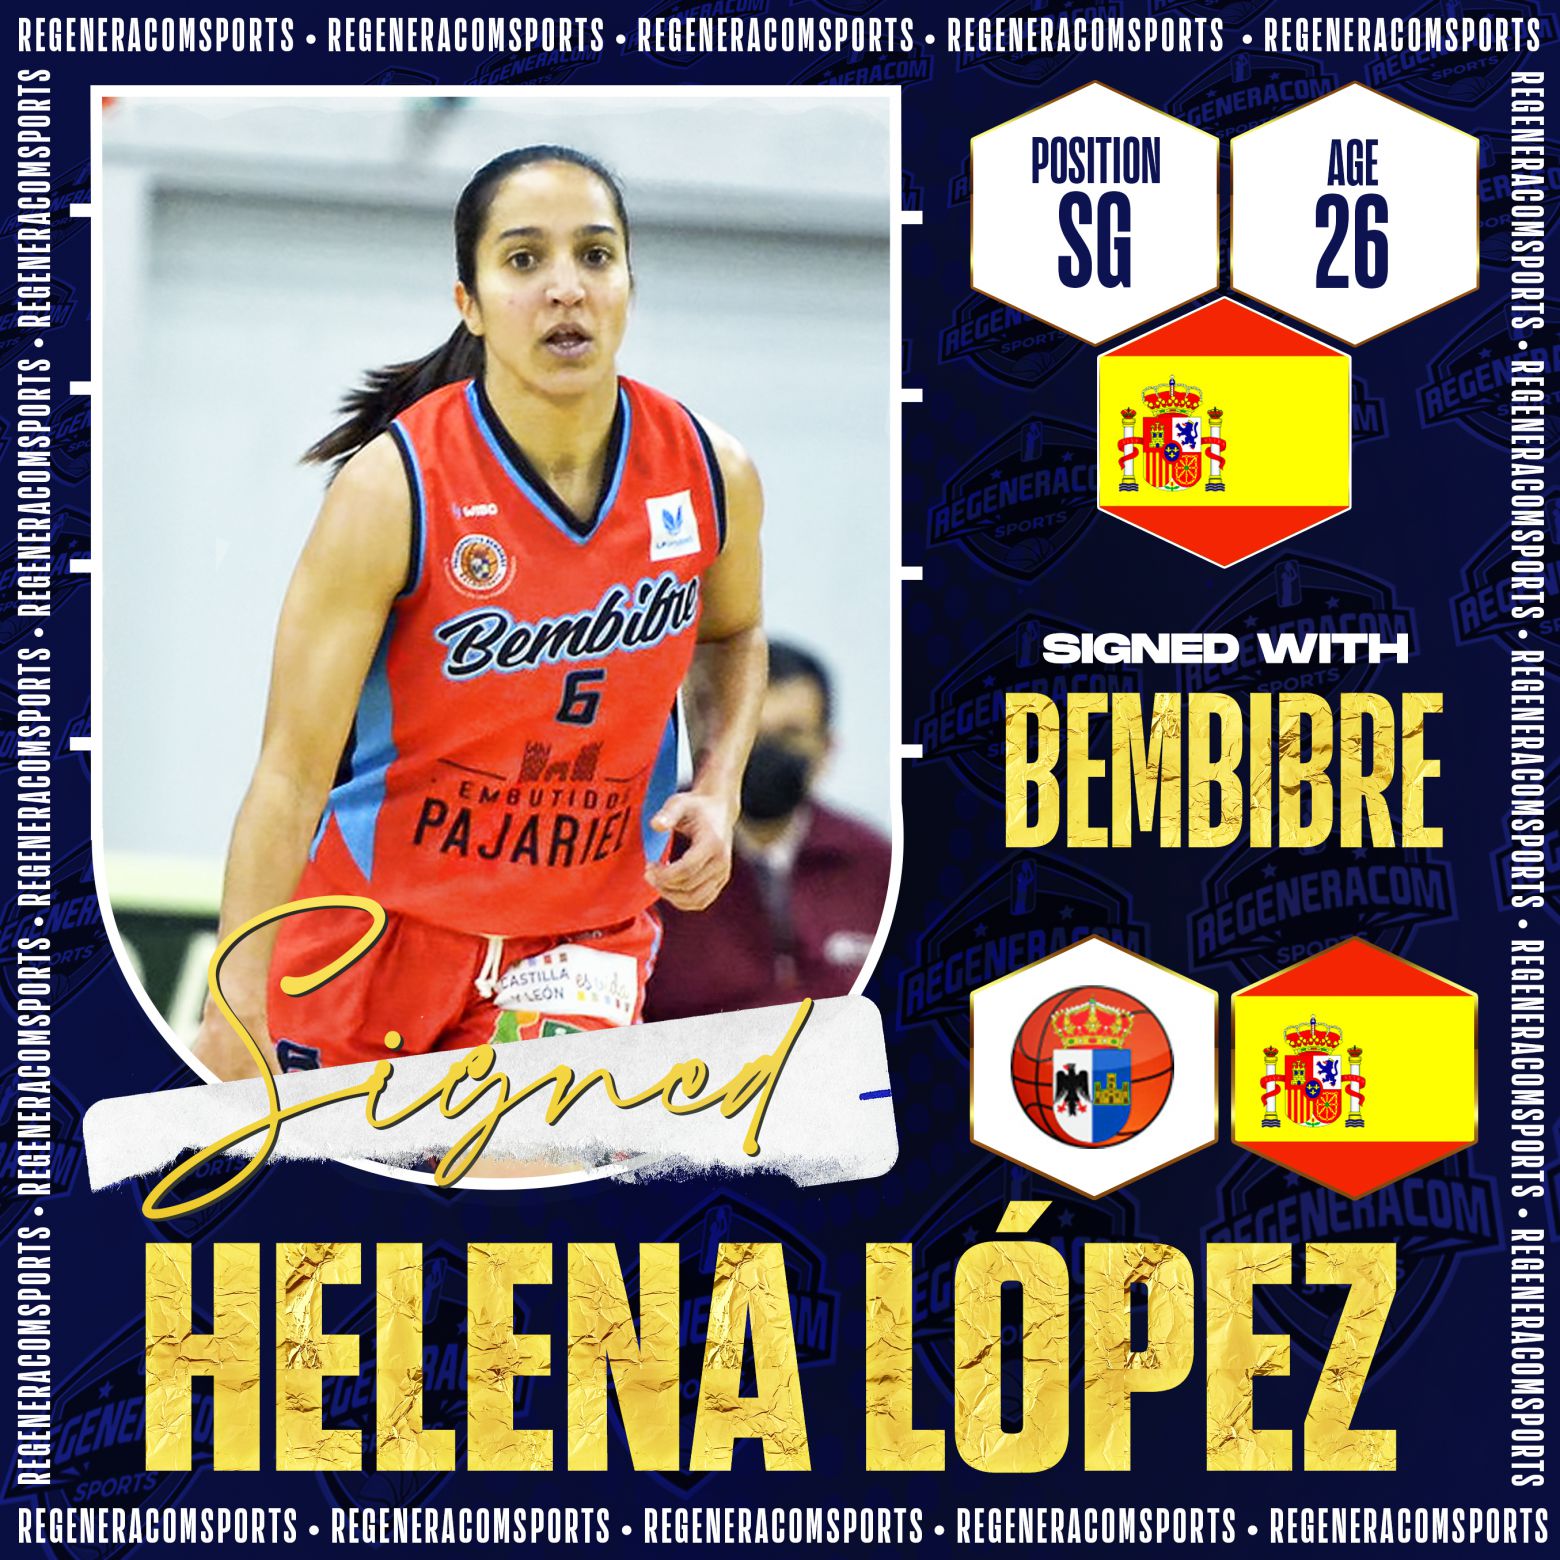 HELENA LÓPEZ ha renovado con Bembibre para la temporada 2022/23